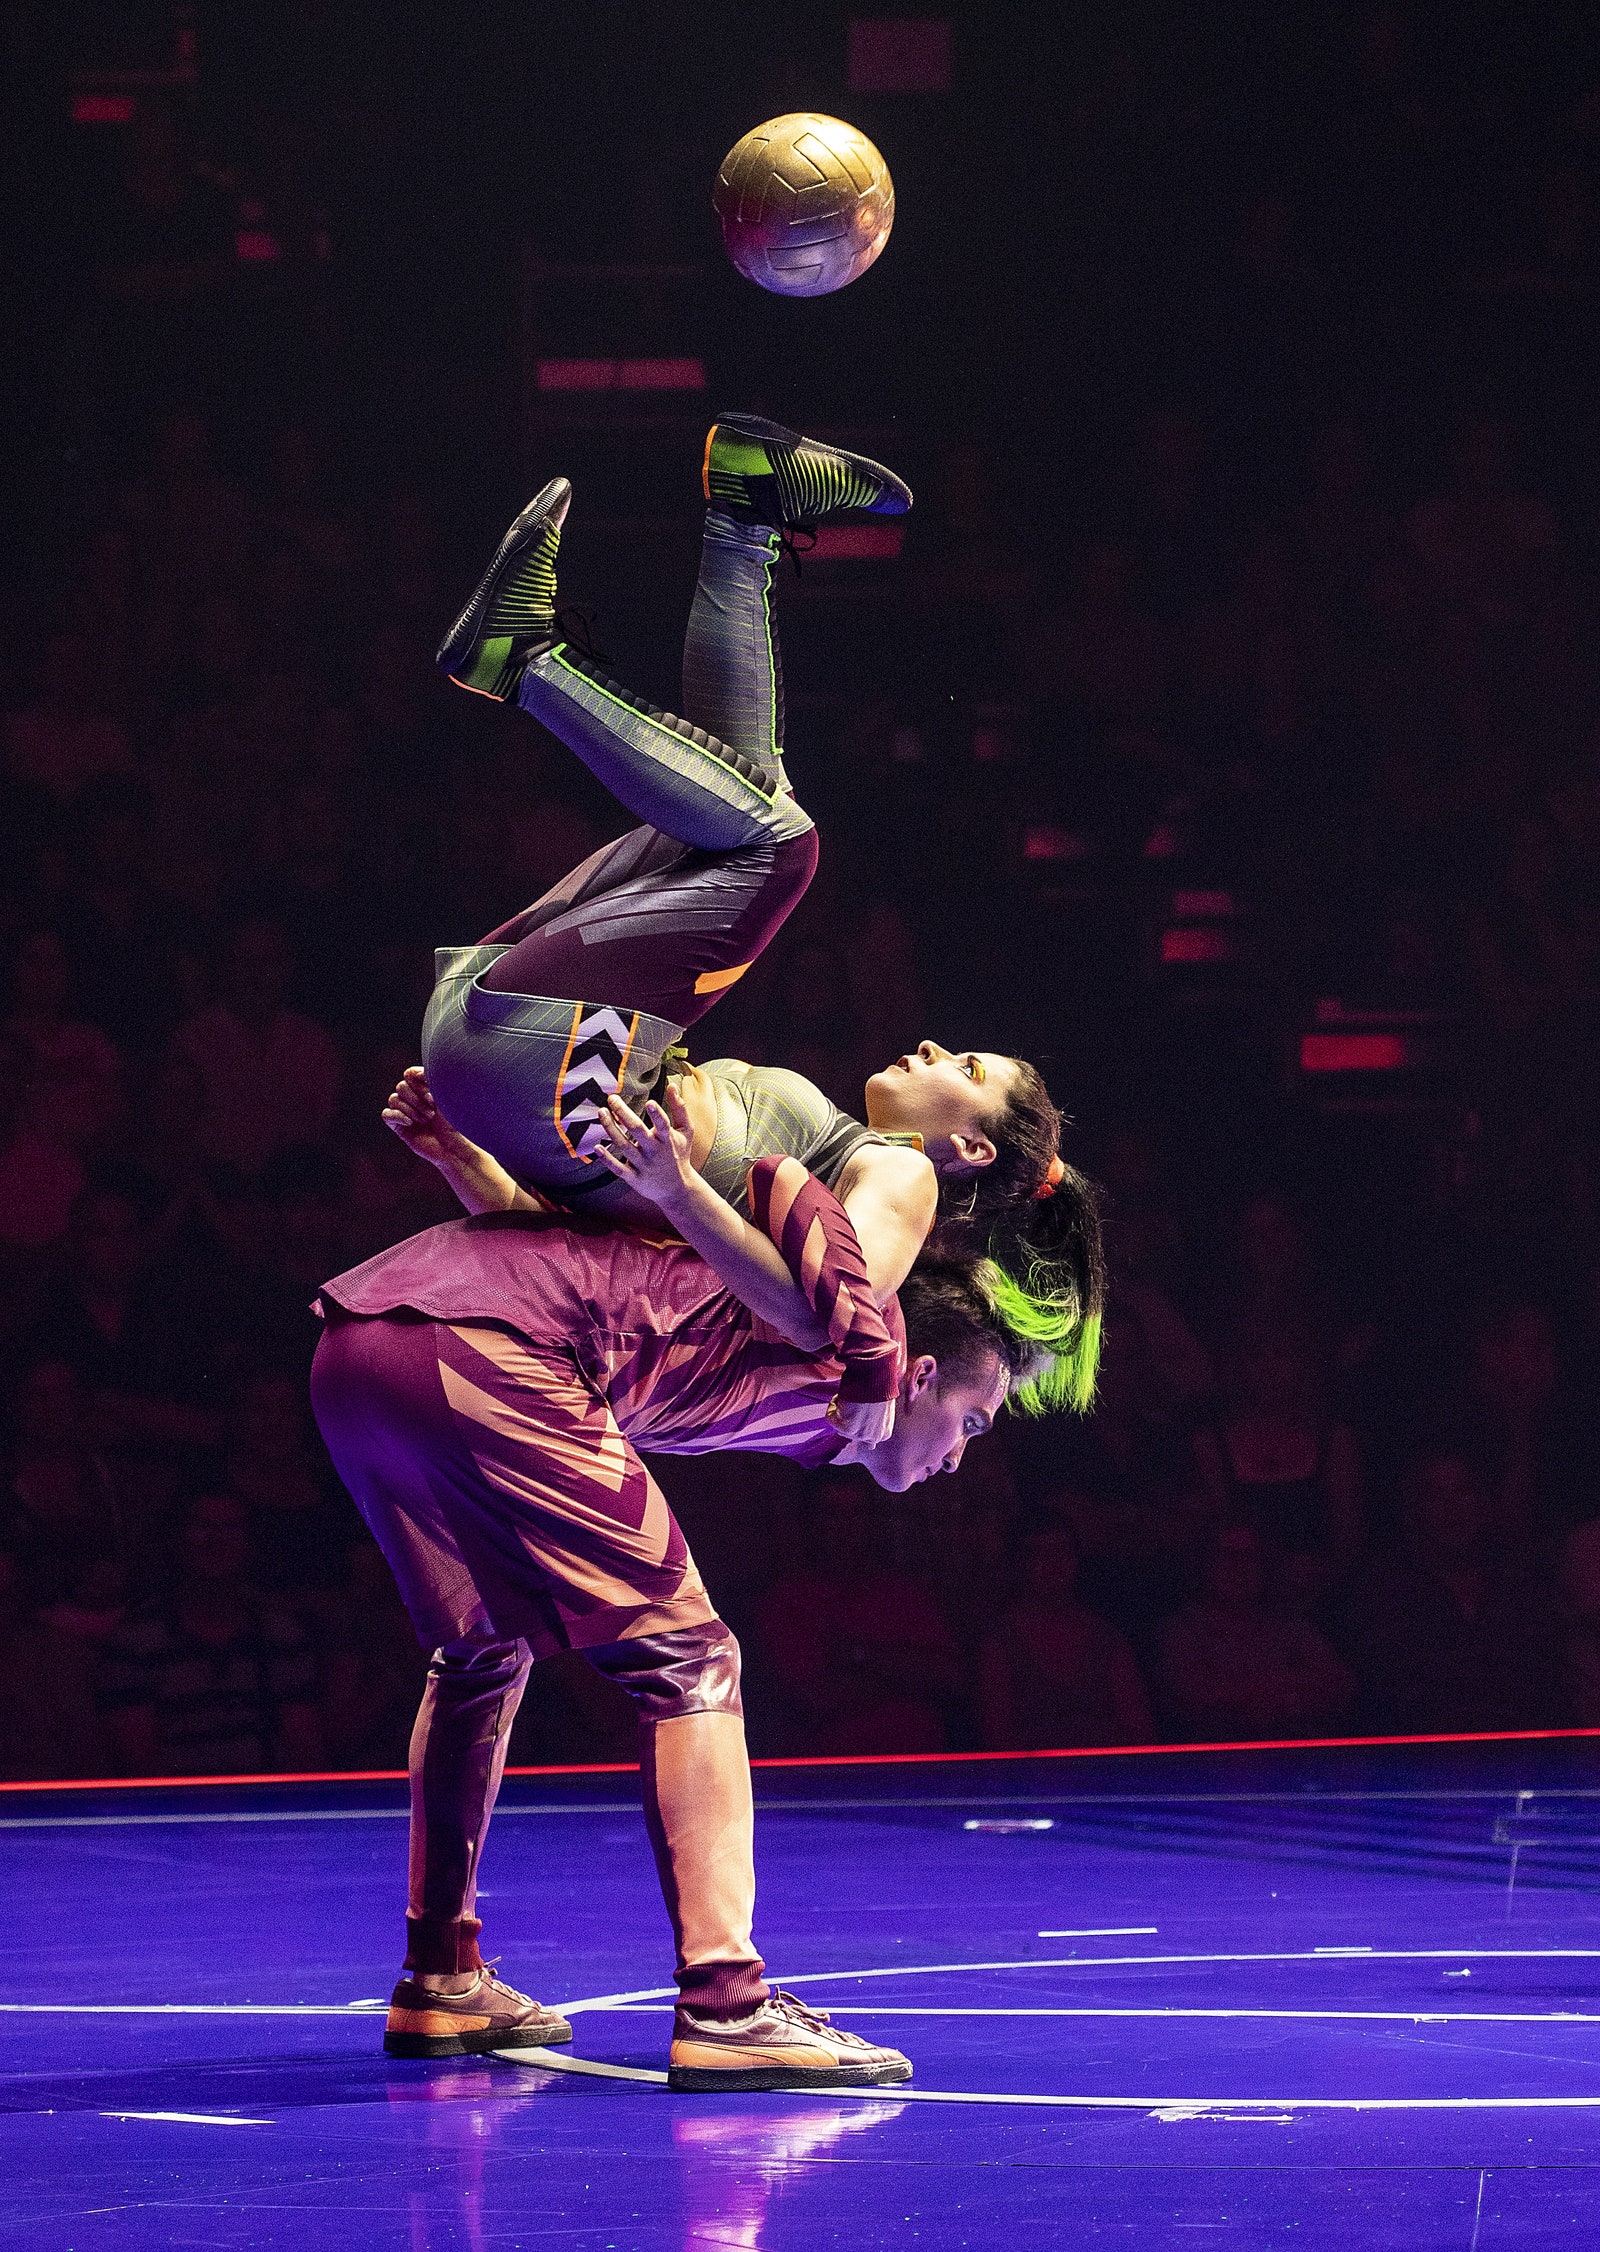 Viber запустил сообщество и стикерпак шоу Messi10 от Cirque du Soleil посвященного Месси